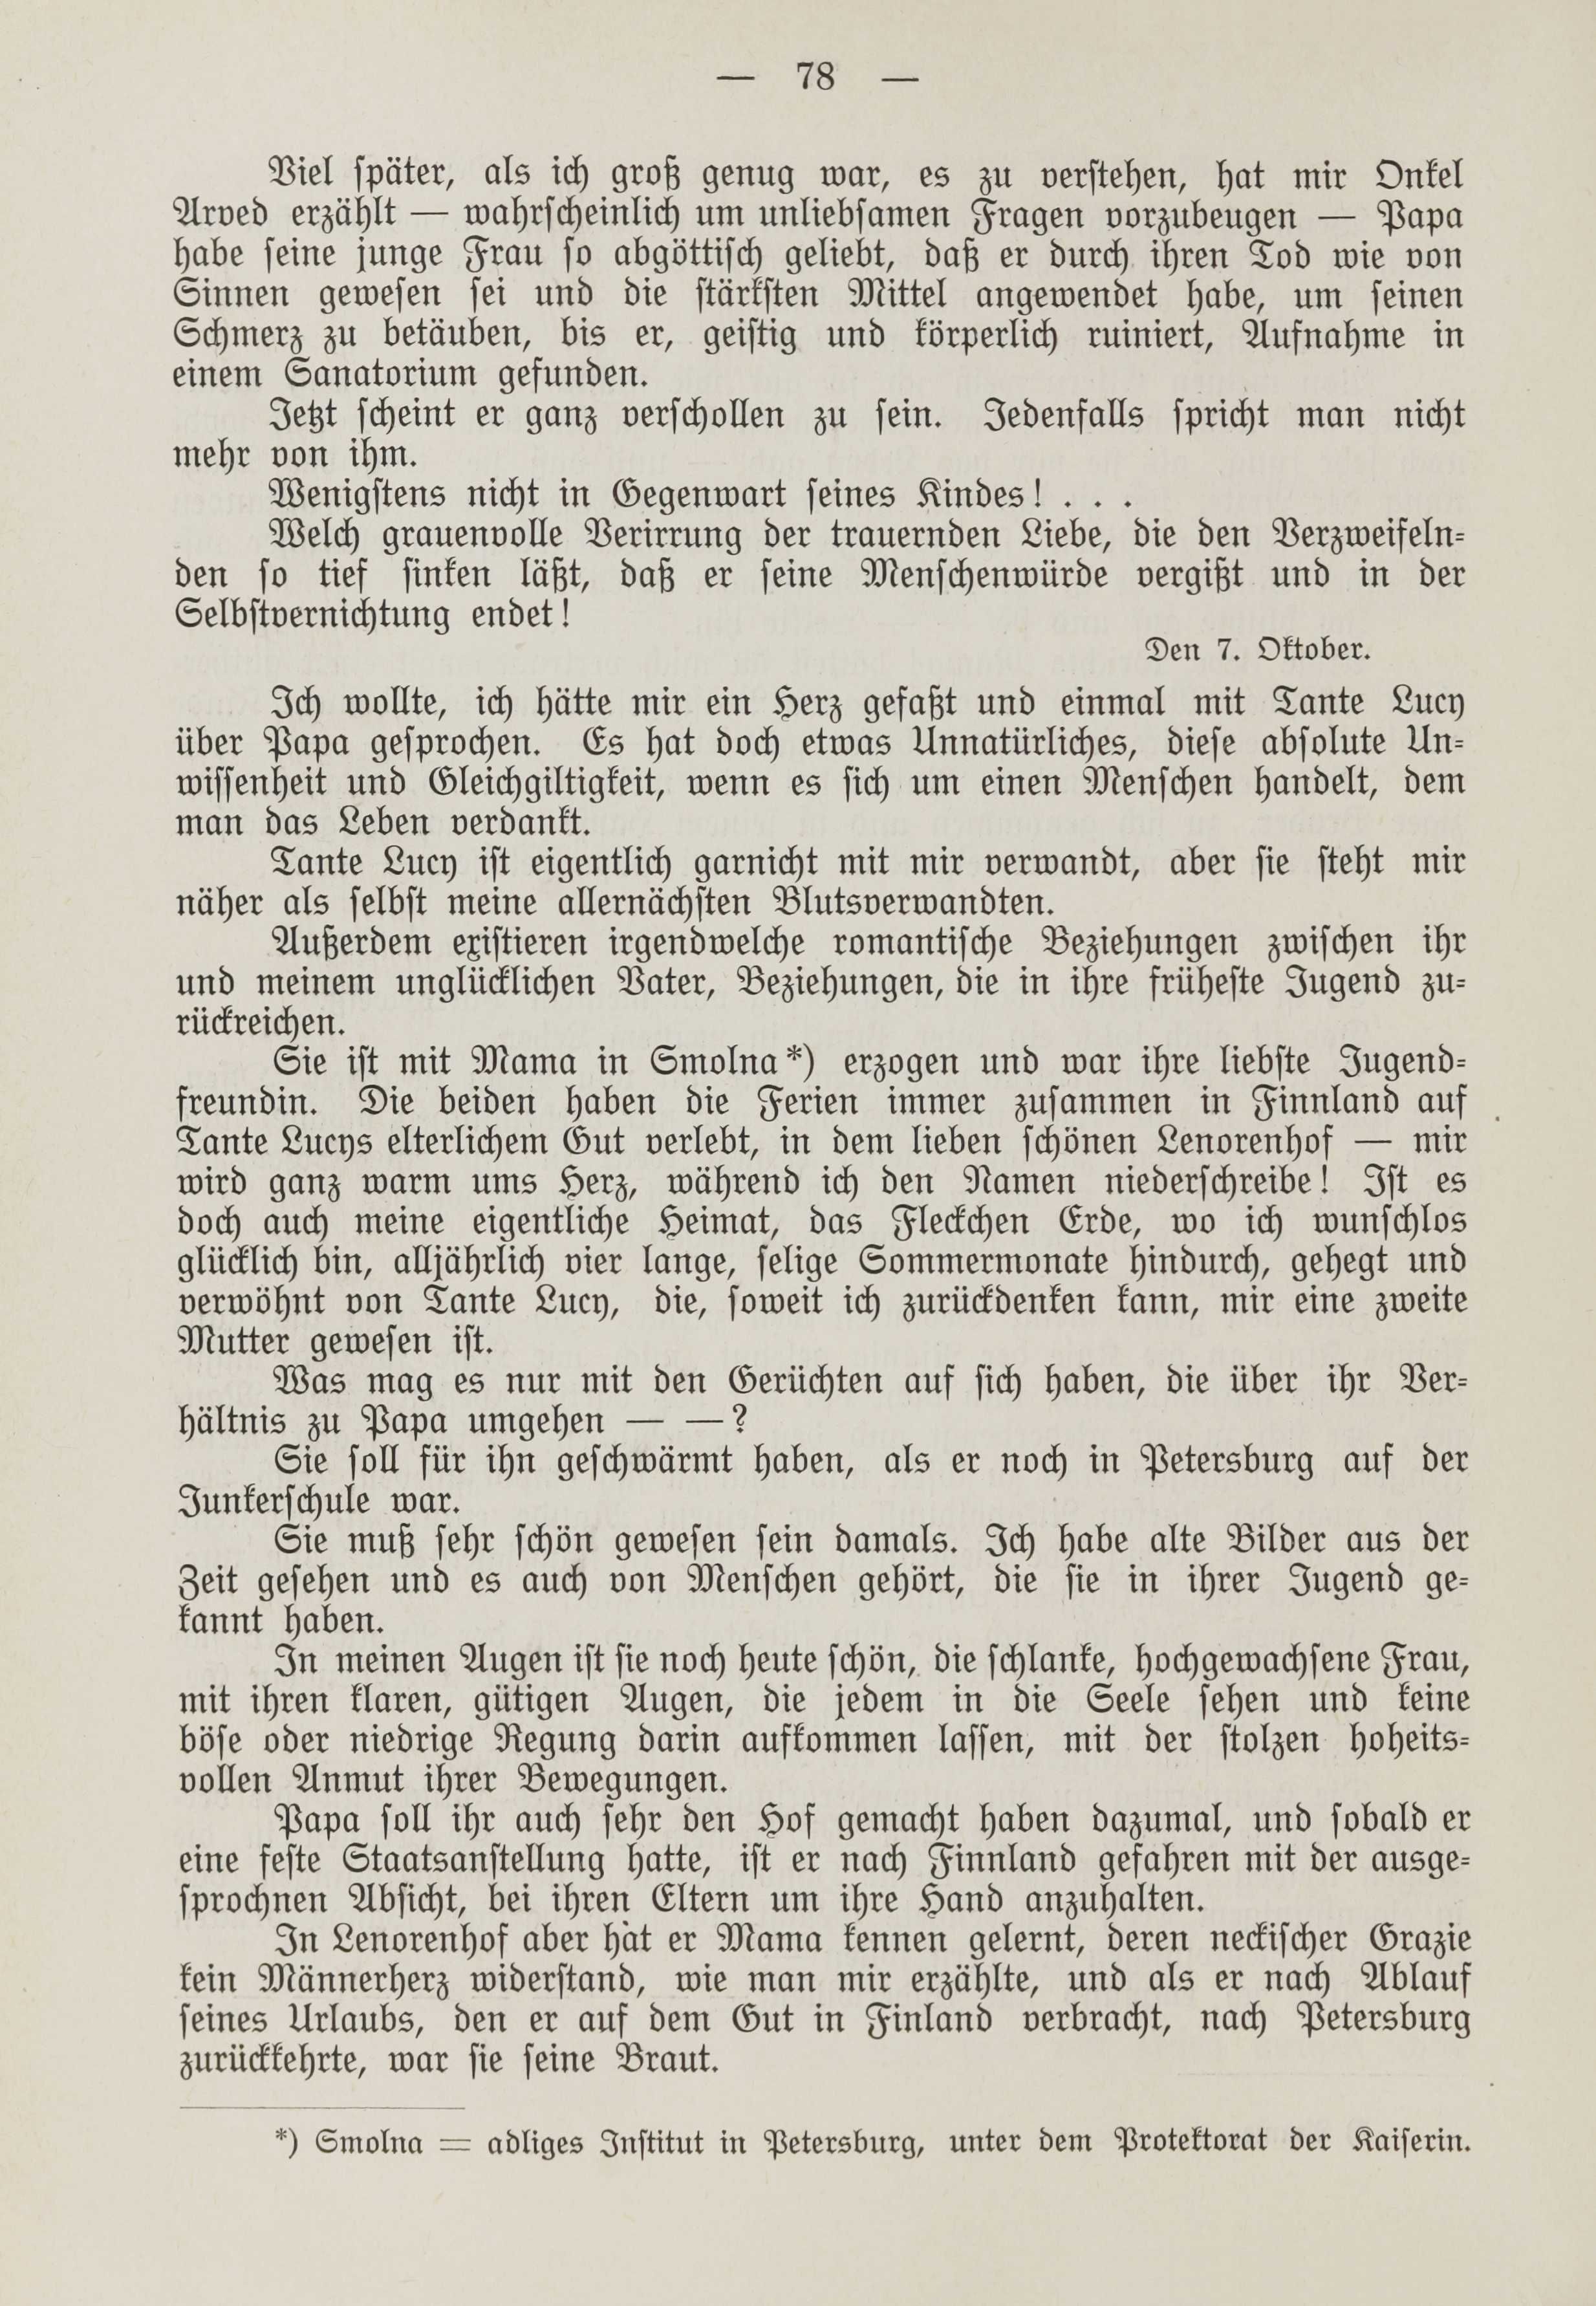 Deutsche Monatsschrift für Russland [1] (1912) | 85. (78) Main body of text